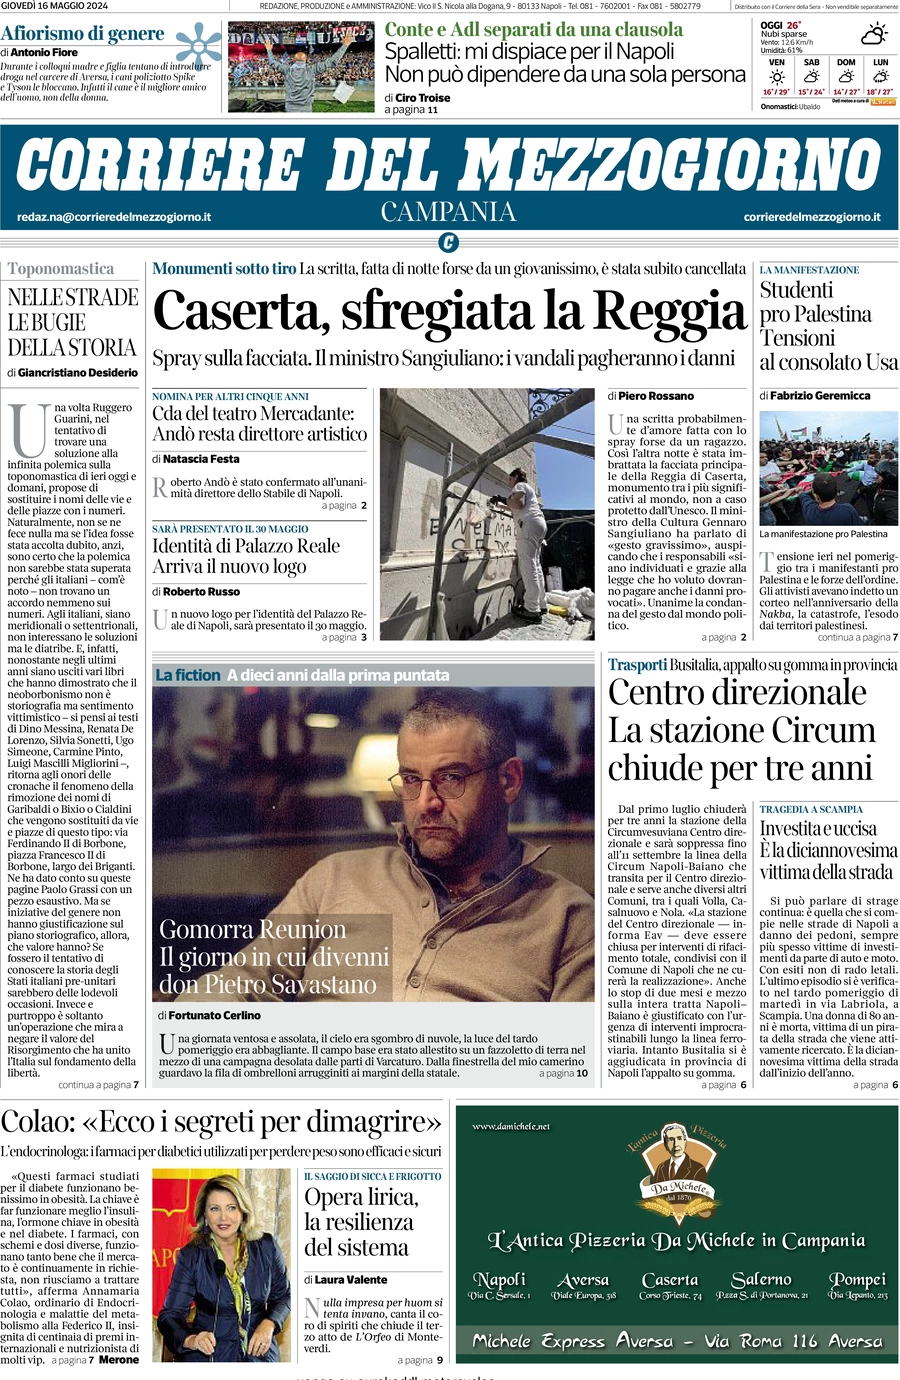 Anteprima prima pagina della rasegna stampa di ieri 2024-05-16 - corriere-del-mezzogiorno-campania/